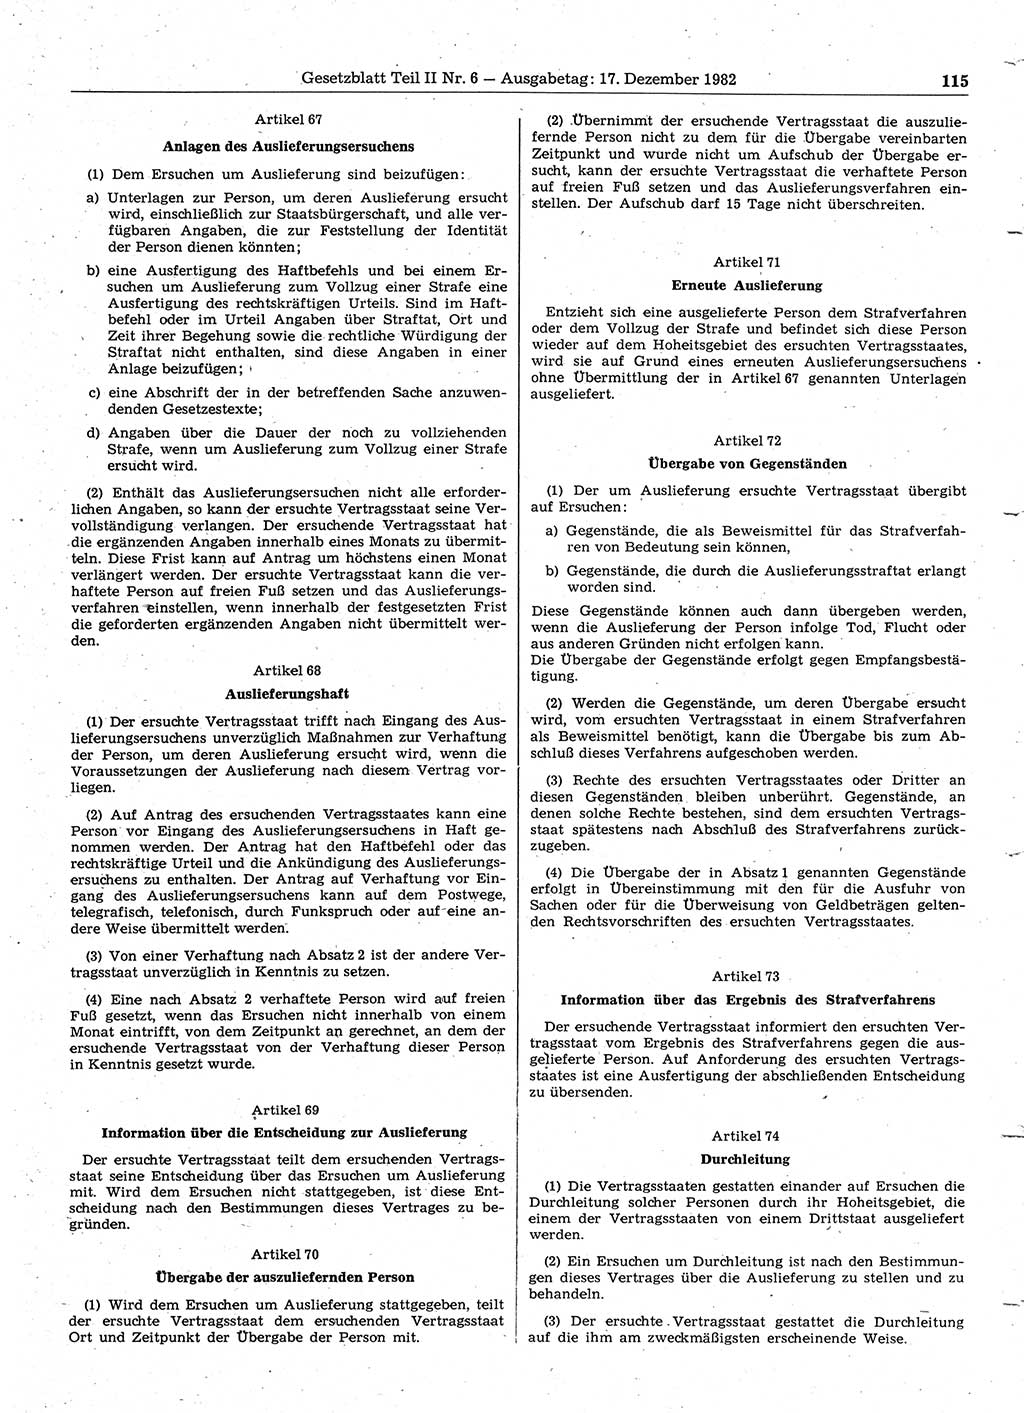 Gesetzblatt (GBl.) der Deutschen Demokratischen Republik (DDR) Teil ⅠⅠ 1982, Seite 115 (GBl. DDR ⅠⅠ 1982, S. 115)